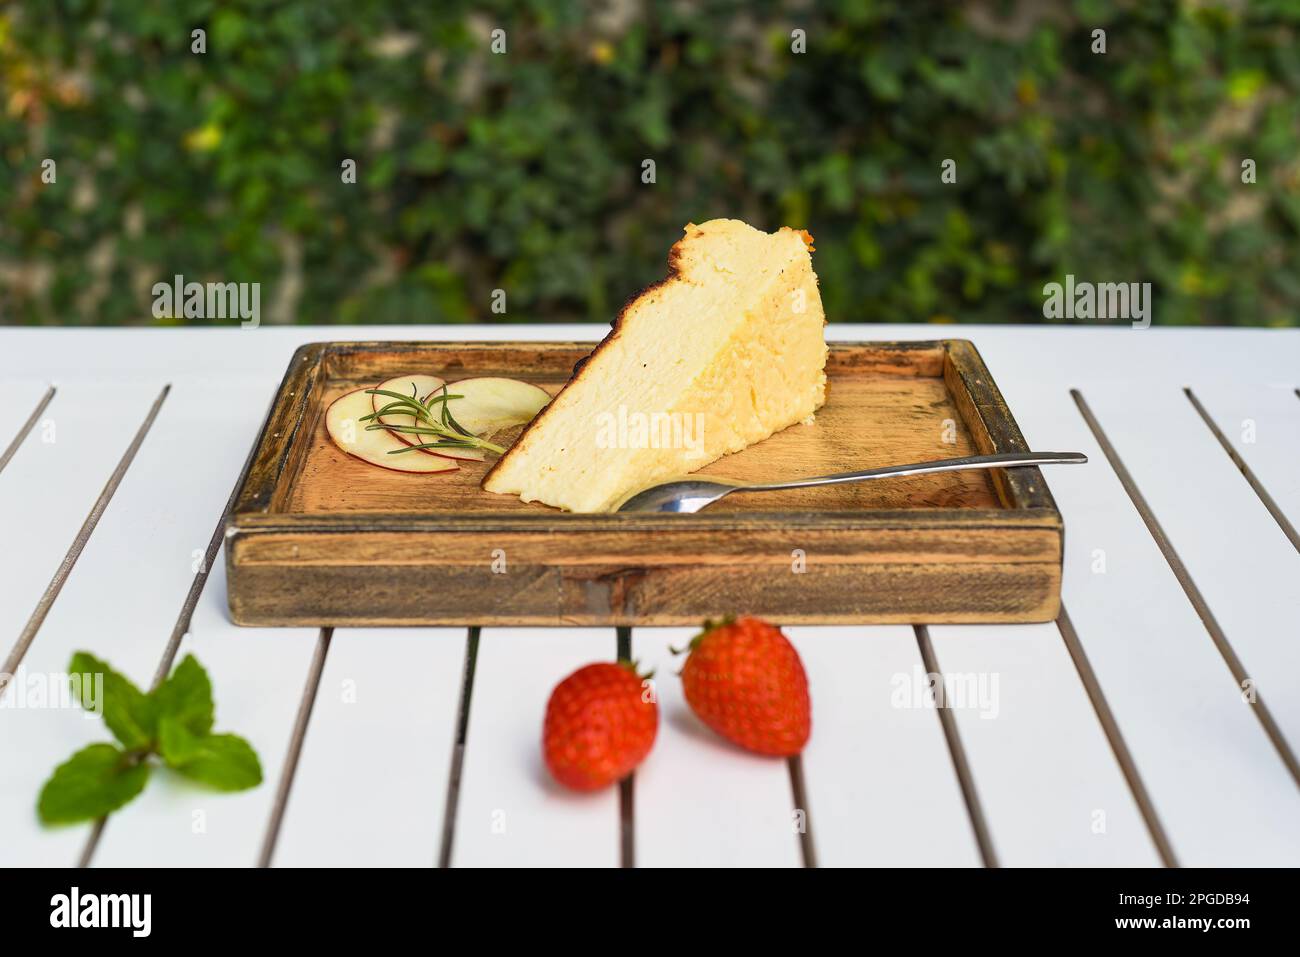 Ein Stück Käsekuchen auf einem Holzbrett mit Erdbeere und Minze auf einem weißen Holztisch mit grünen Blättern und einer Kopierfläche Stockfoto